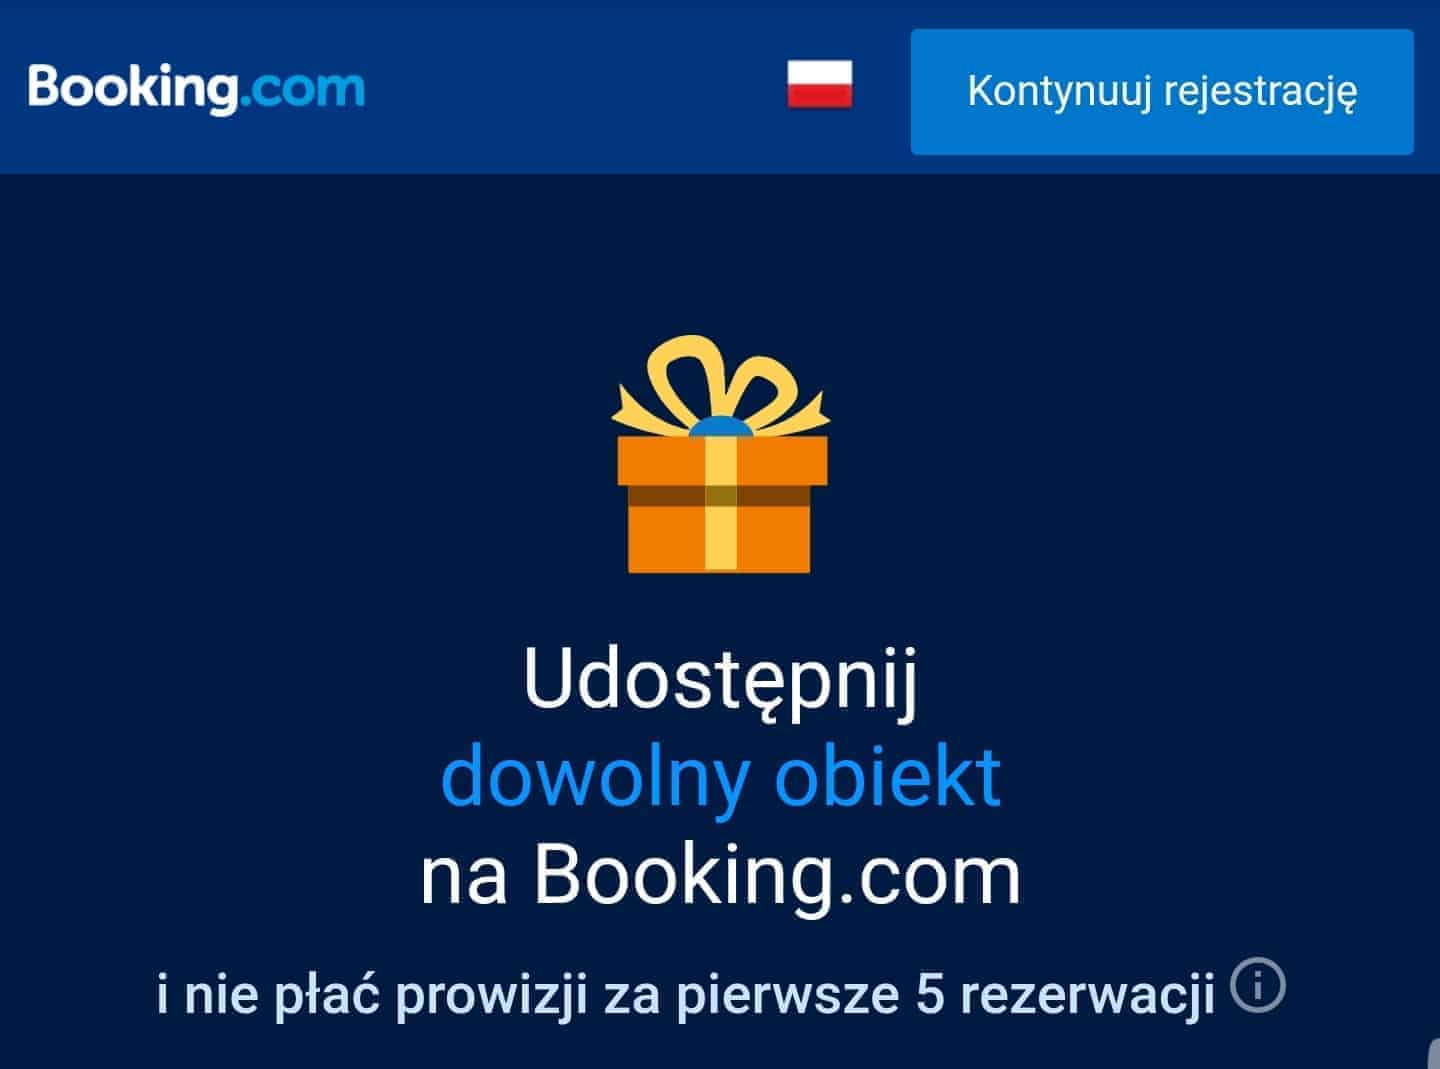 Booking.com dodaj obiekt